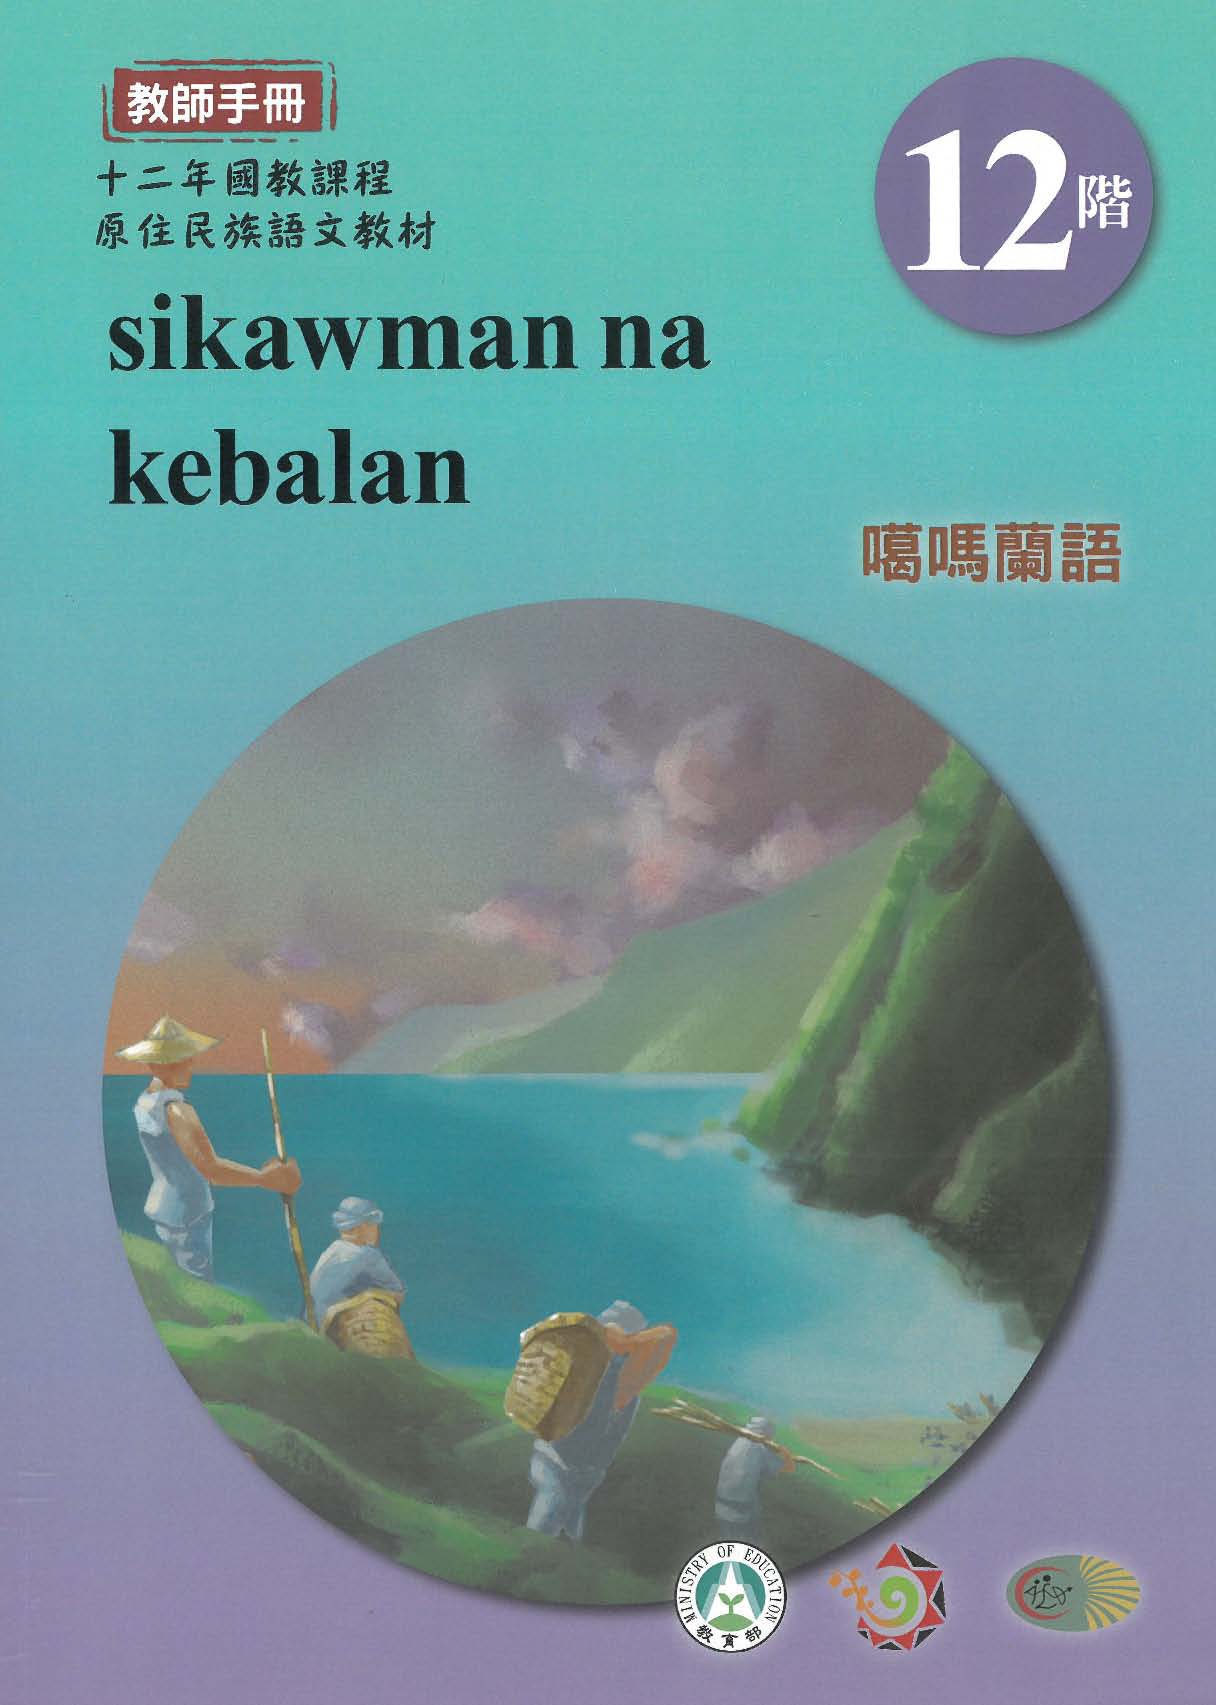 十二年國教原住民族語文教材 噶瑪蘭語 教師手冊 第12階